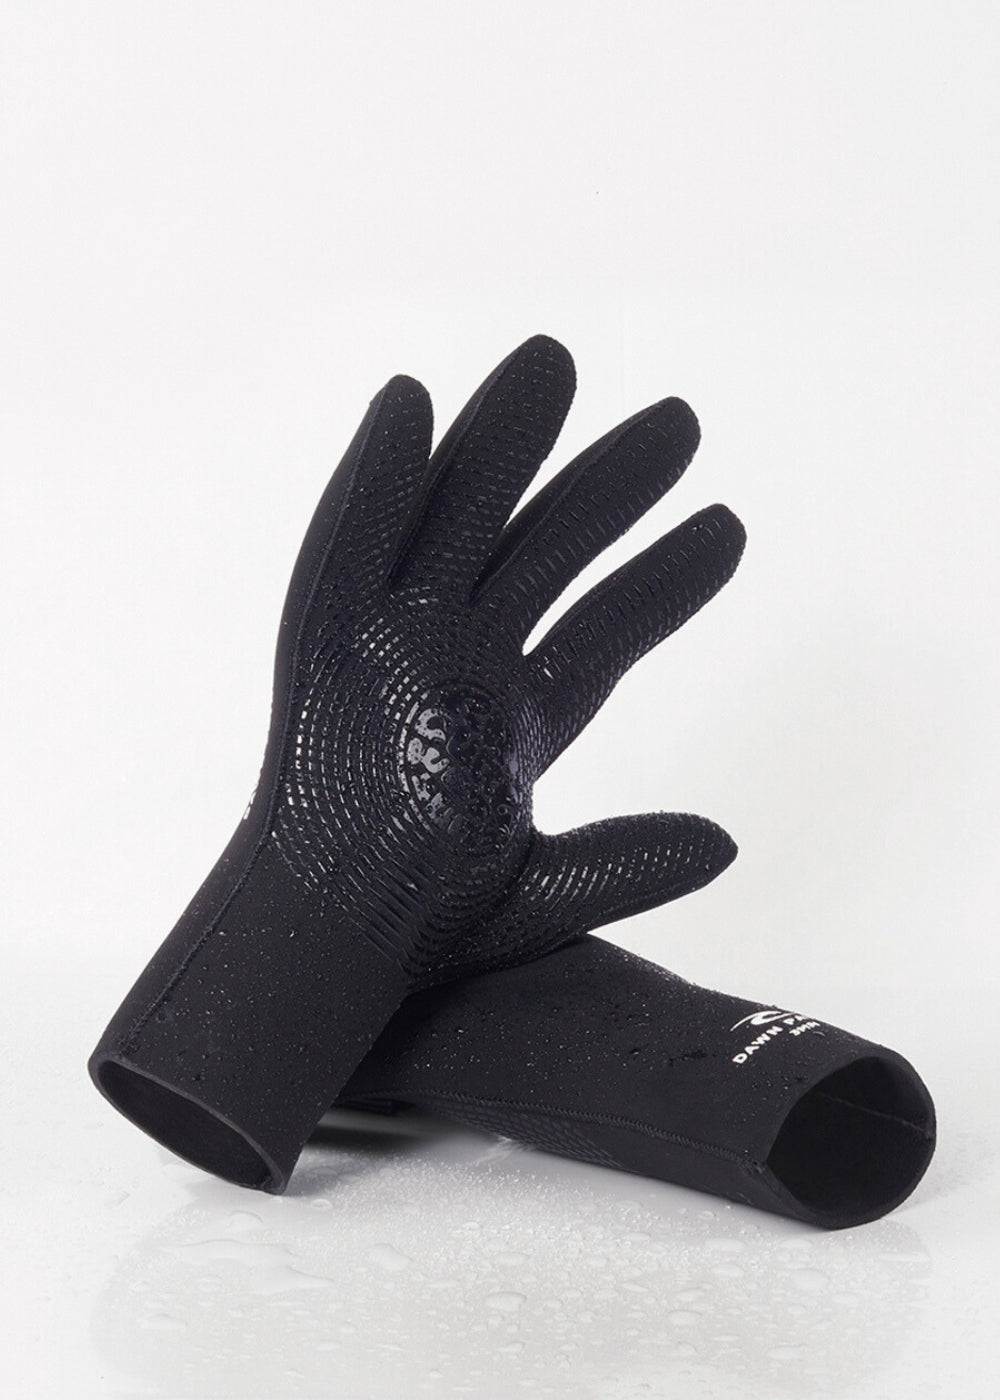 Rip Curl Dawn Patrol 3mm Neoprene Wetsuit Gloves